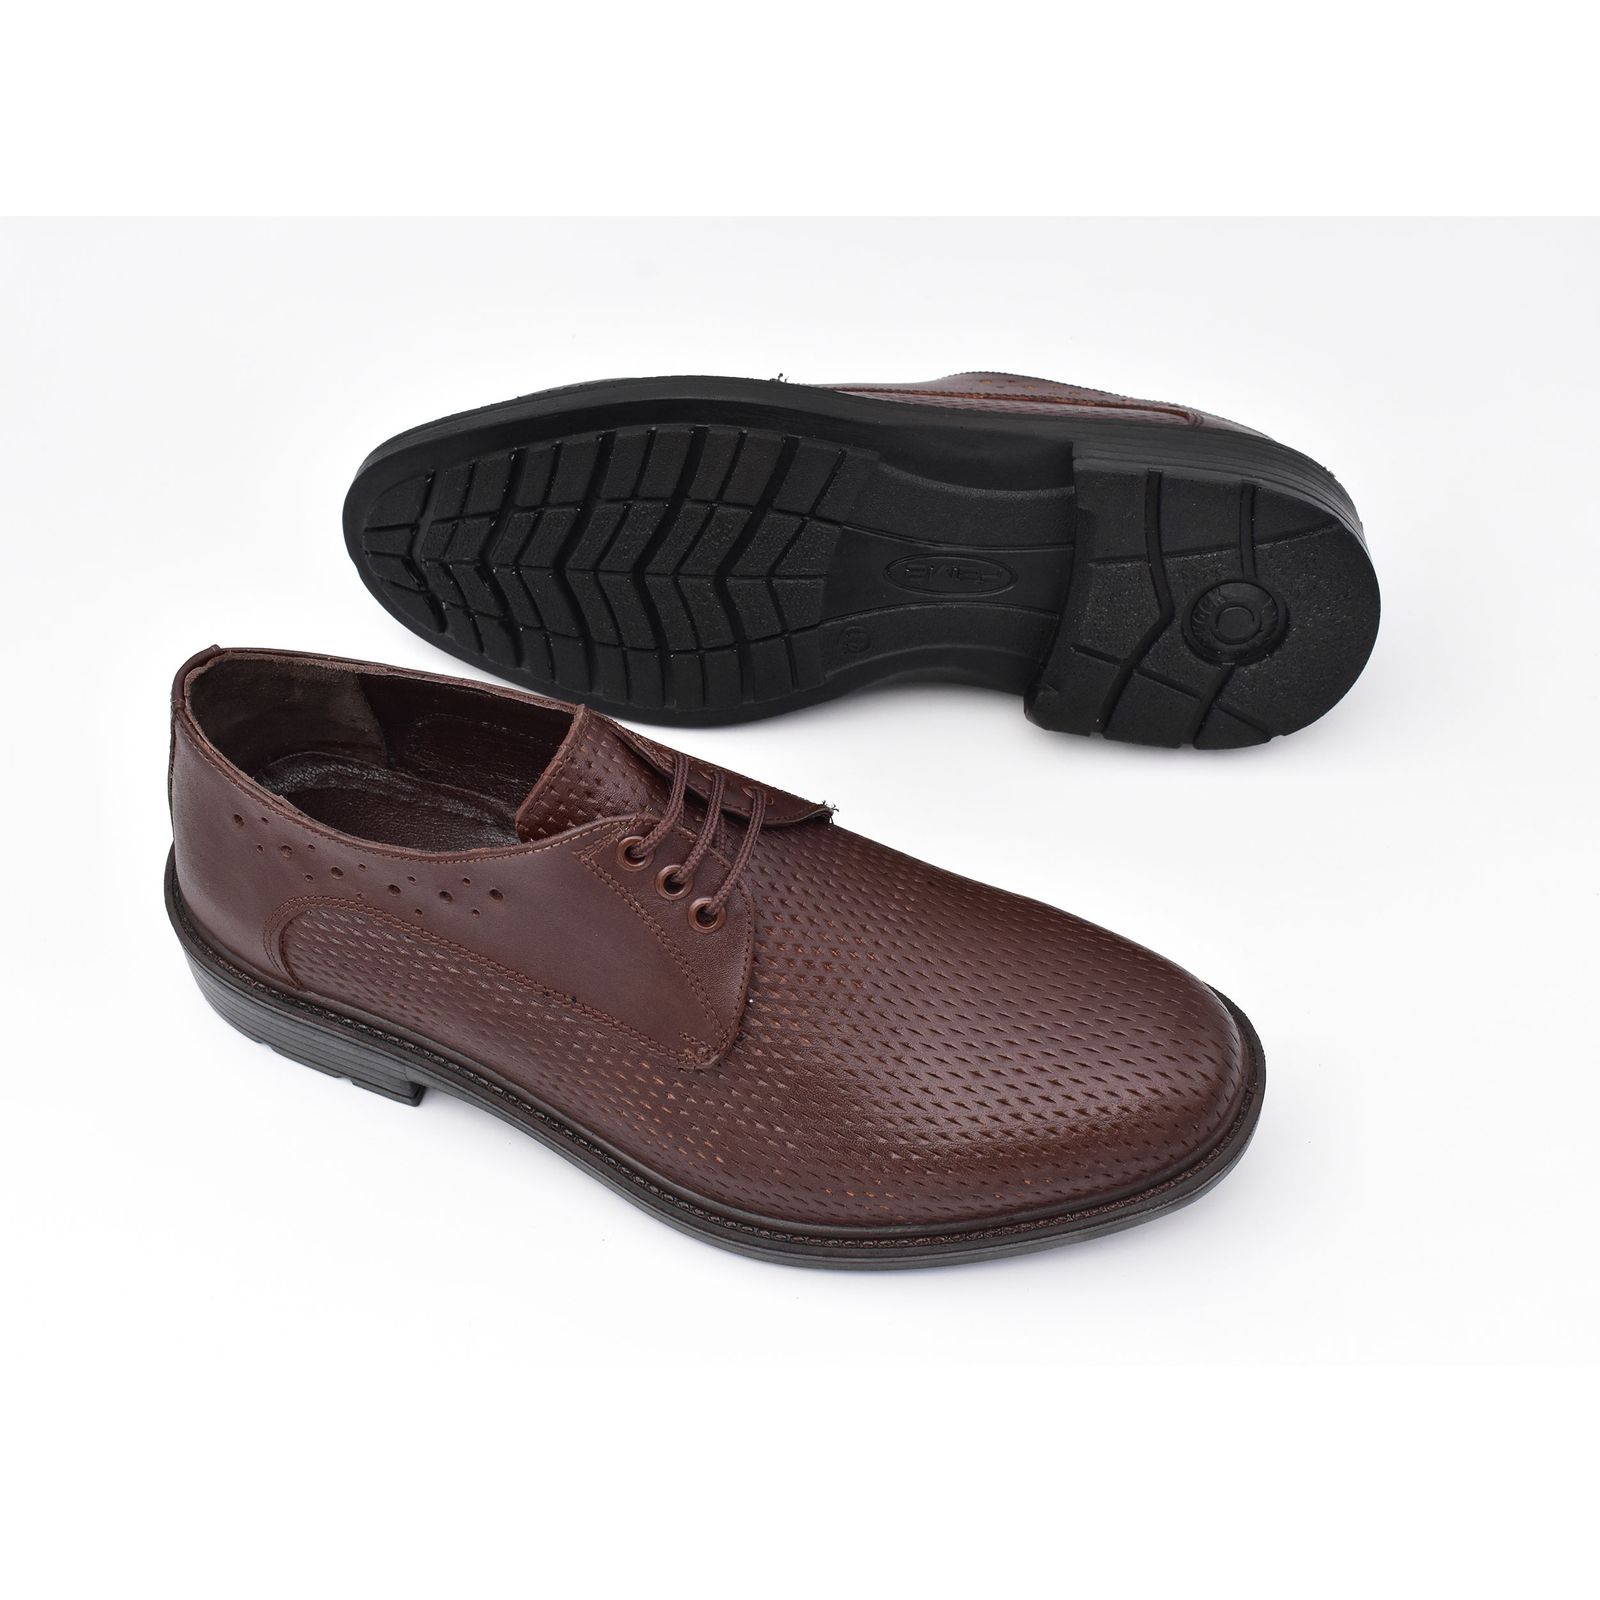 کفش مردانه پاما مدل Morano کد G1183 -  - 6